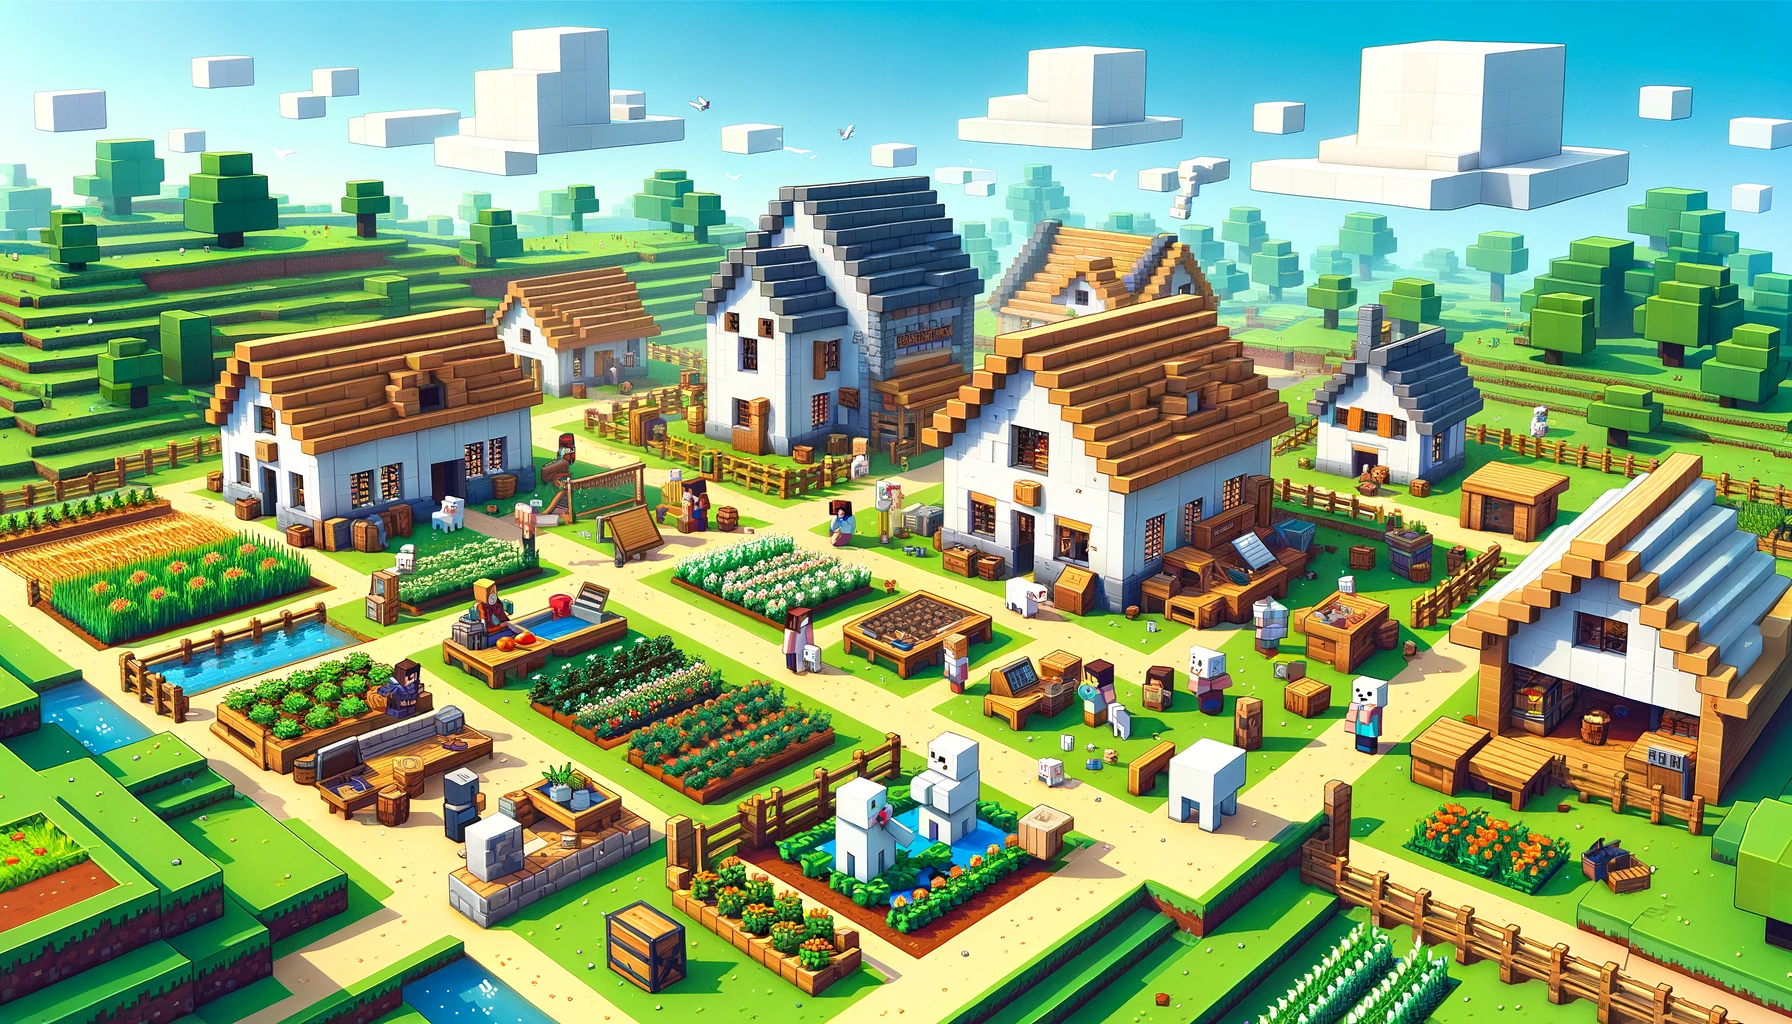 Villages in Minecraft